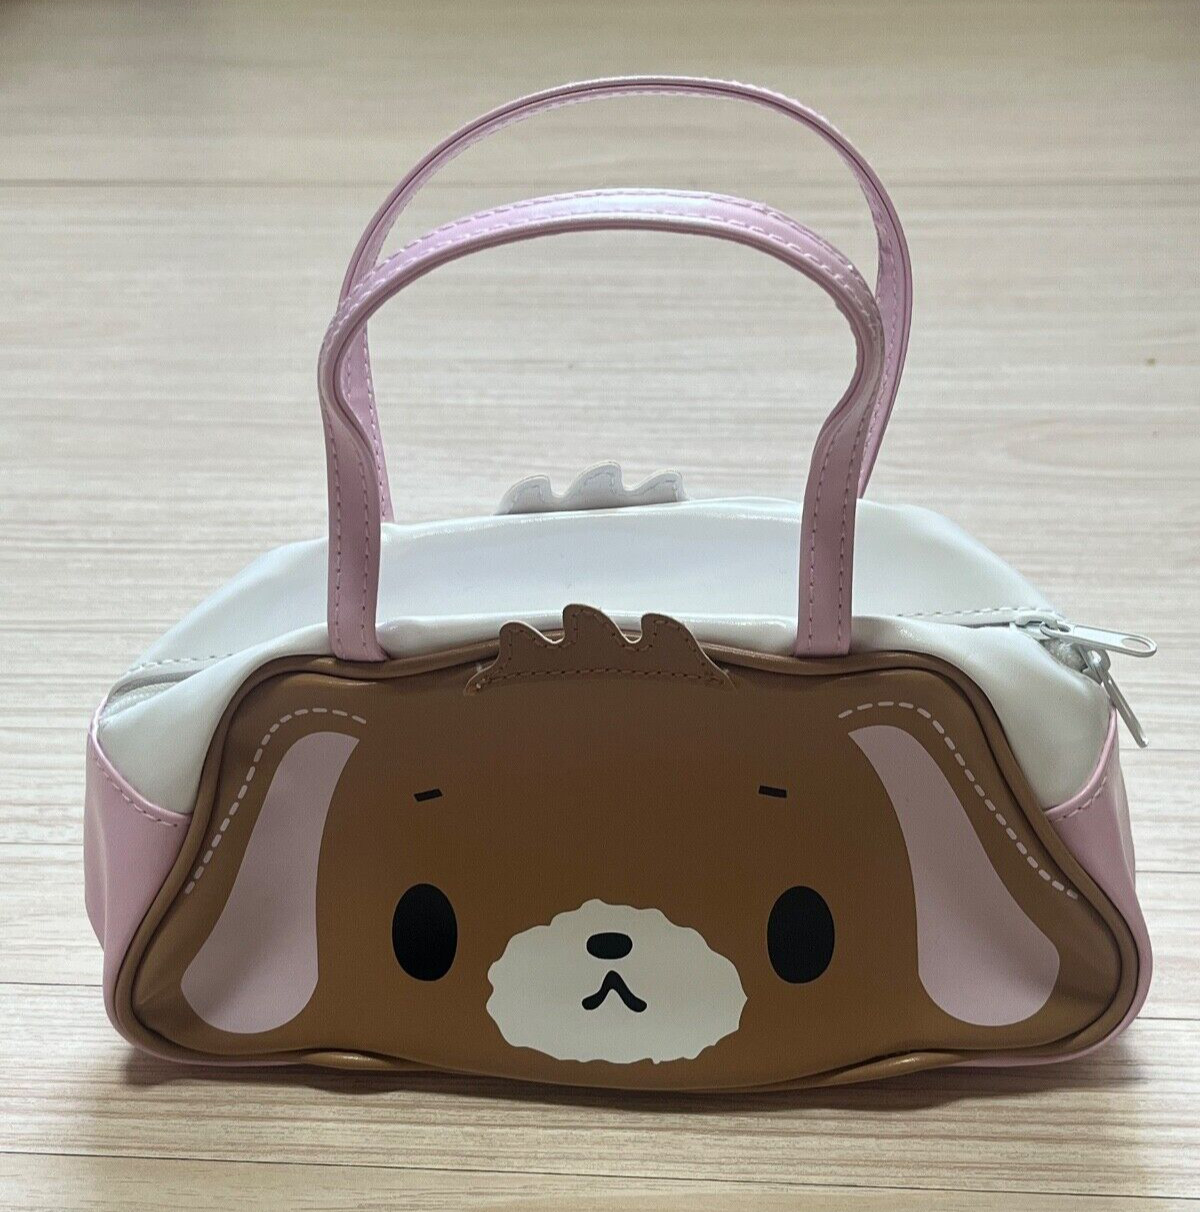 Sanrio Sugar Bunnies Shirousa Kurousa Handbag Bag Pouch Die Cut Face Rare Japan